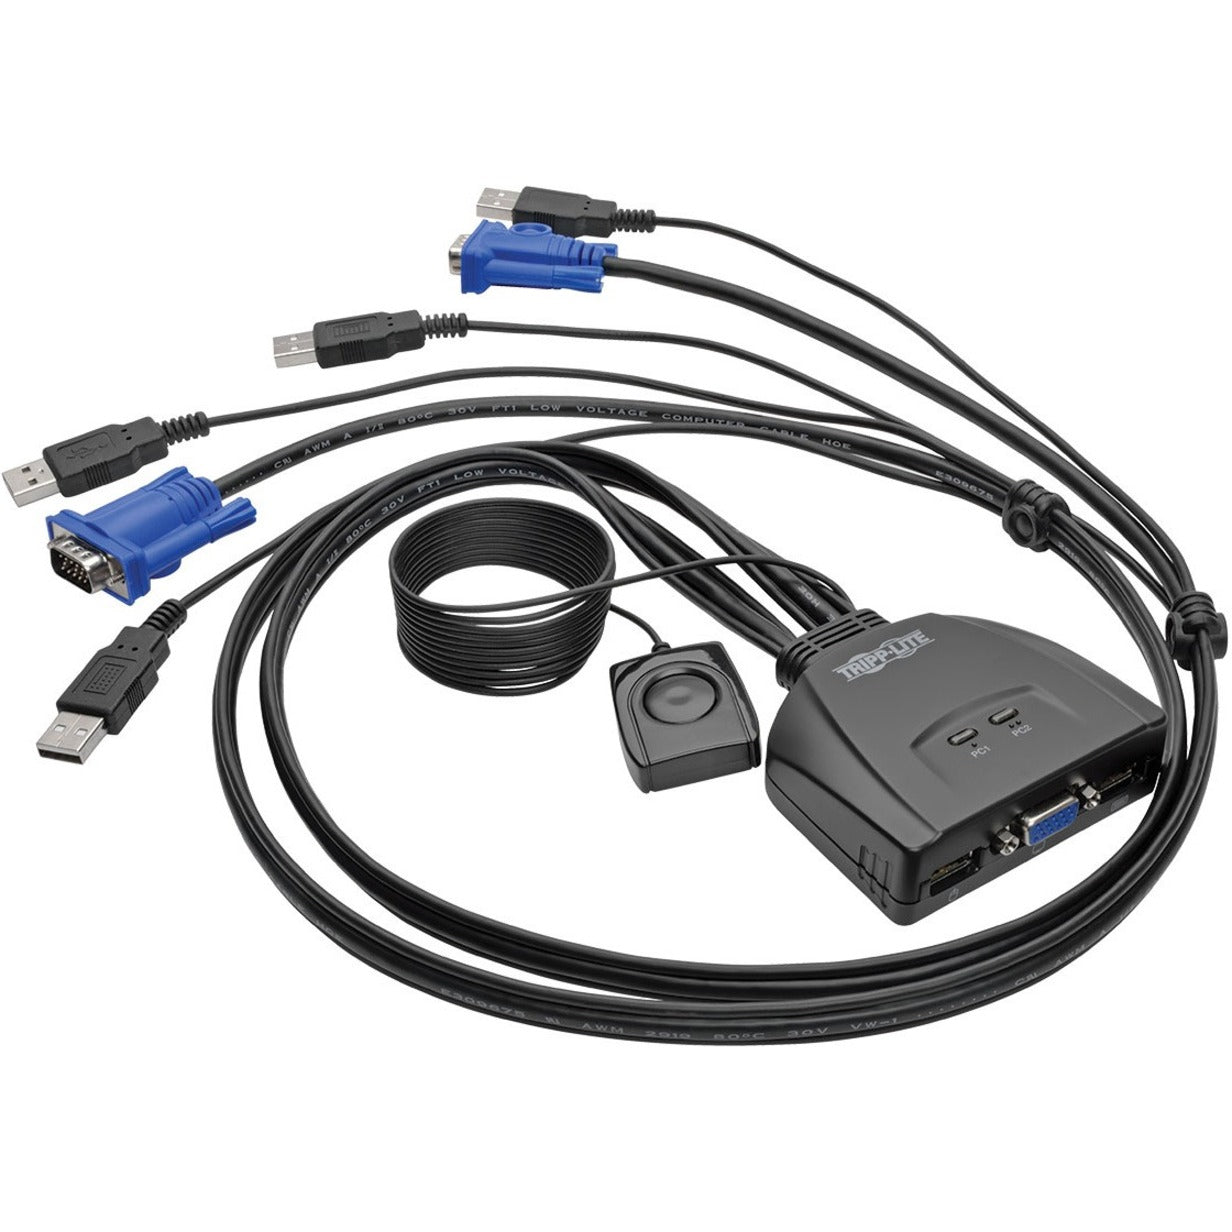 Tripp Lite B032-VU2 2-Puerto USB/VGA Cable KVM Switch con Cables y Compartir Periférico USB Resolución 2048 x 1536 Garantía de 3 Años. Marca: Tripp Lite Translate Tripp Lite: Tripp Lite